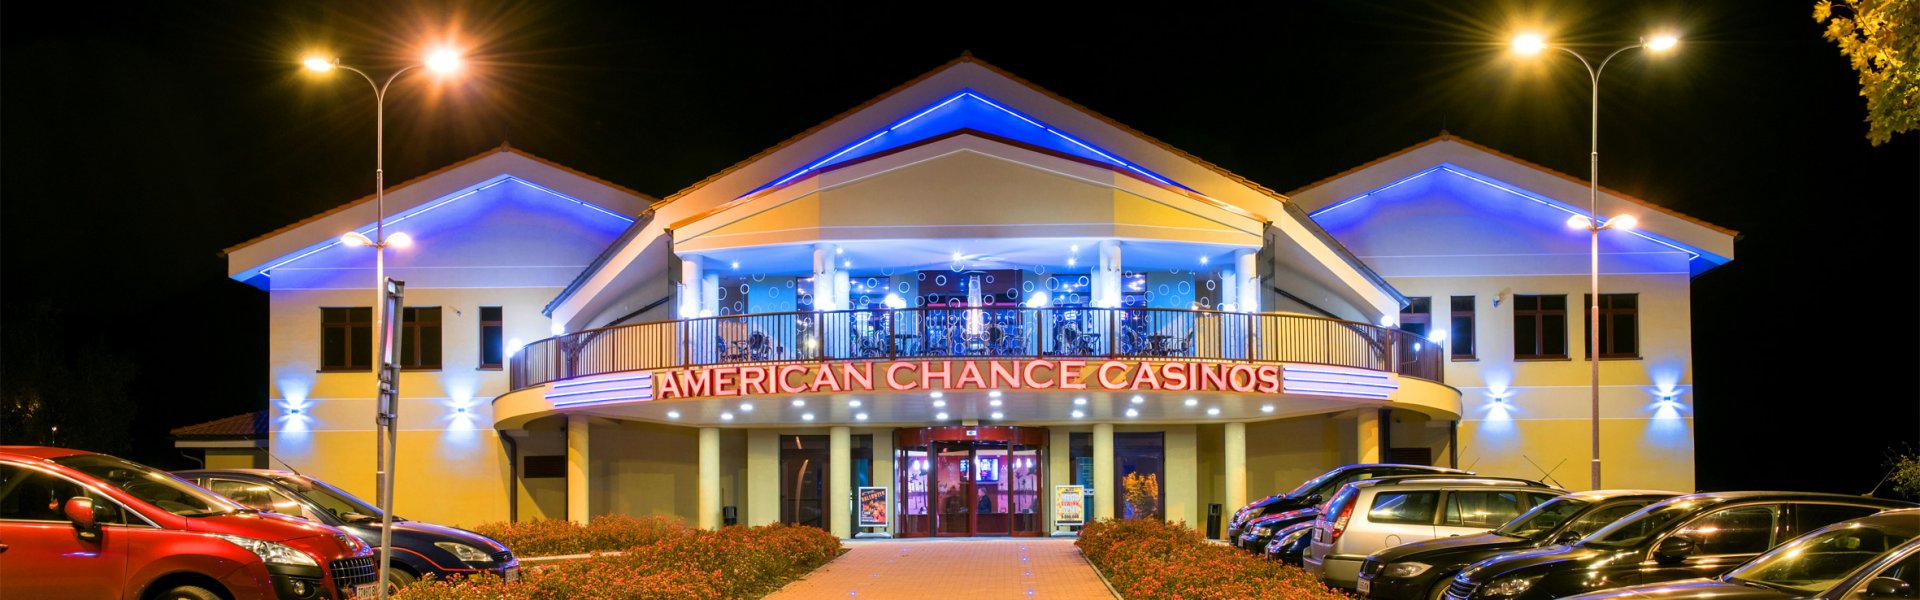 20 Ecu Maklercourtage Abzüglich casino online paysafe Einzahlung Kasino 20 Startguthaben